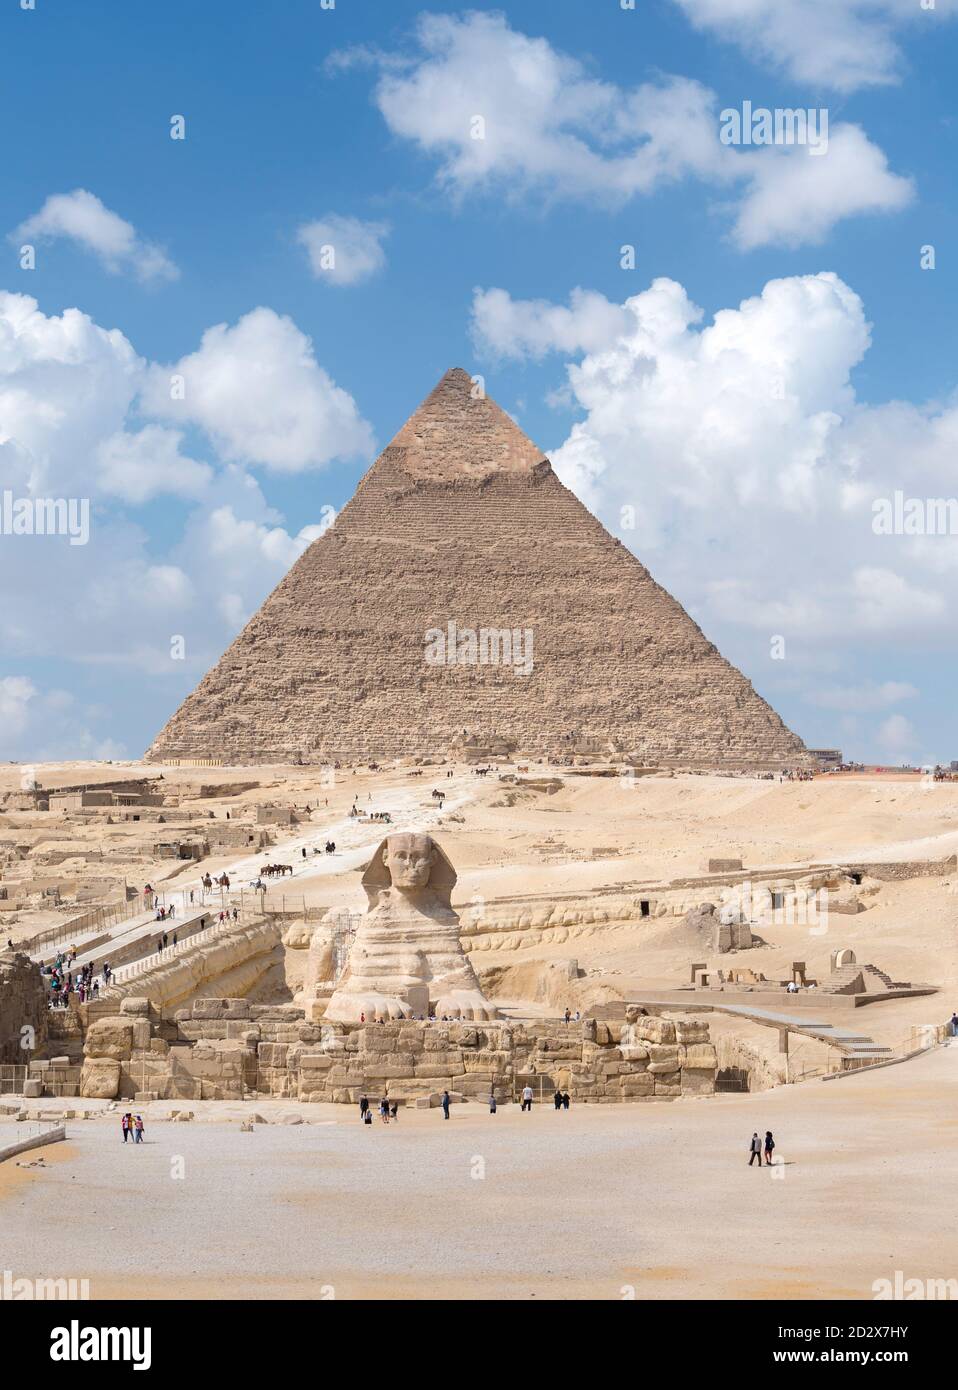 La pyramide de Khafre avec le Sphinx, Gizeh, Egypte Banque D'Images